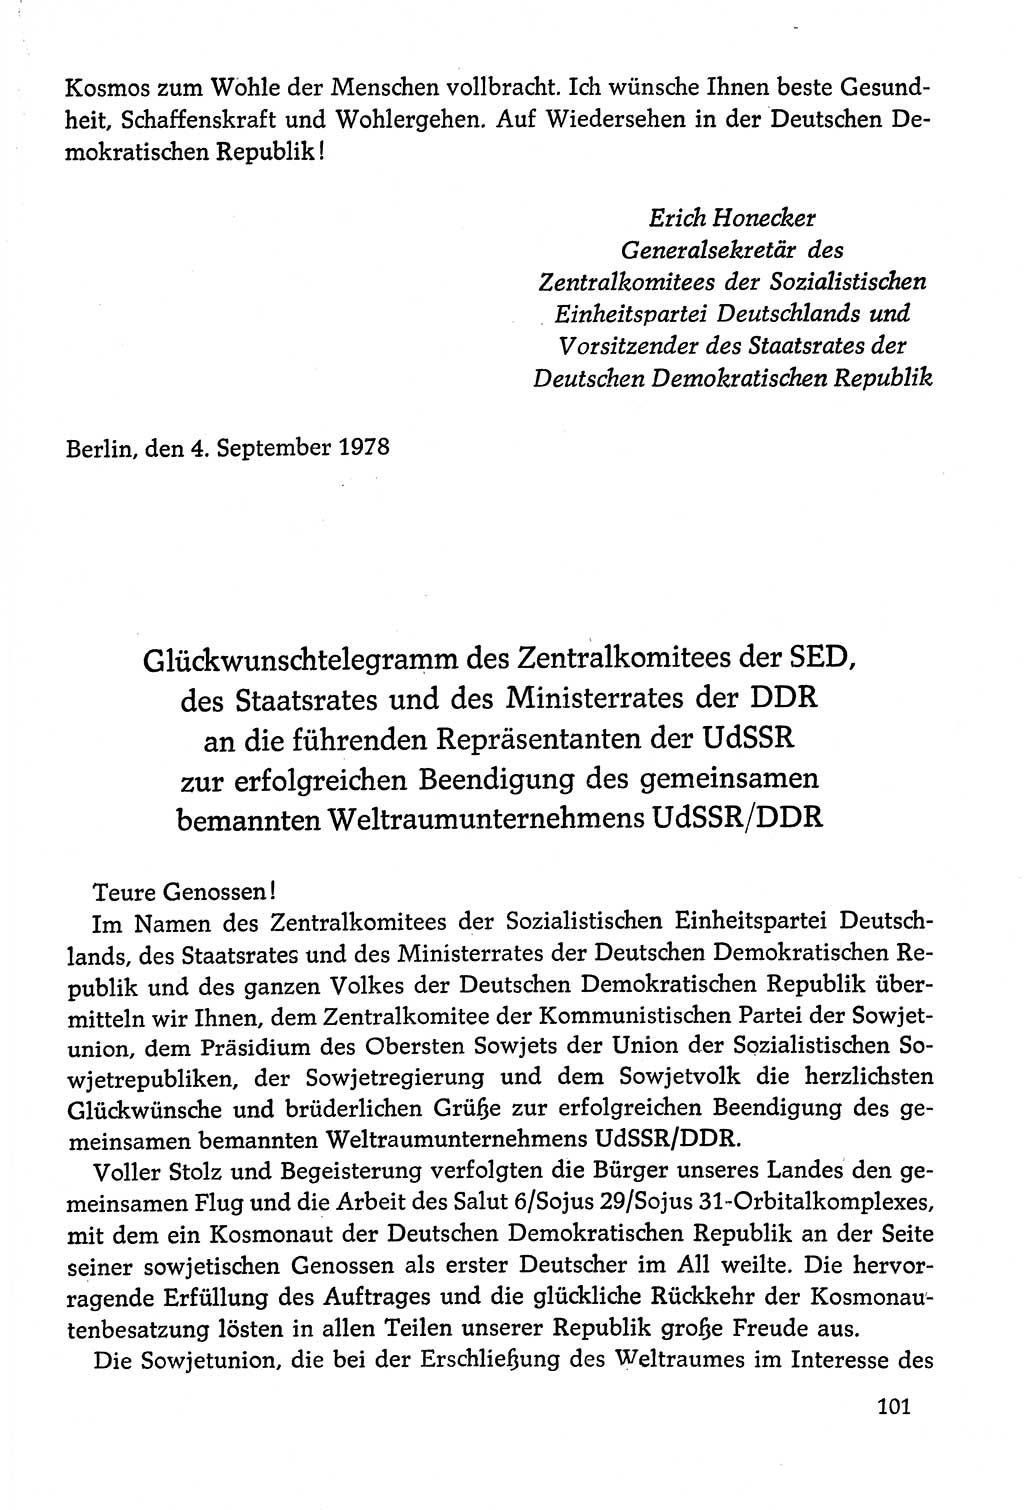 Dokumente der Sozialistischen Einheitspartei Deutschlands (SED) [Deutsche Demokratische Republik (DDR)] 1978-1979, Seite 101 (Dok. SED DDR 1978-1979, S. 101)